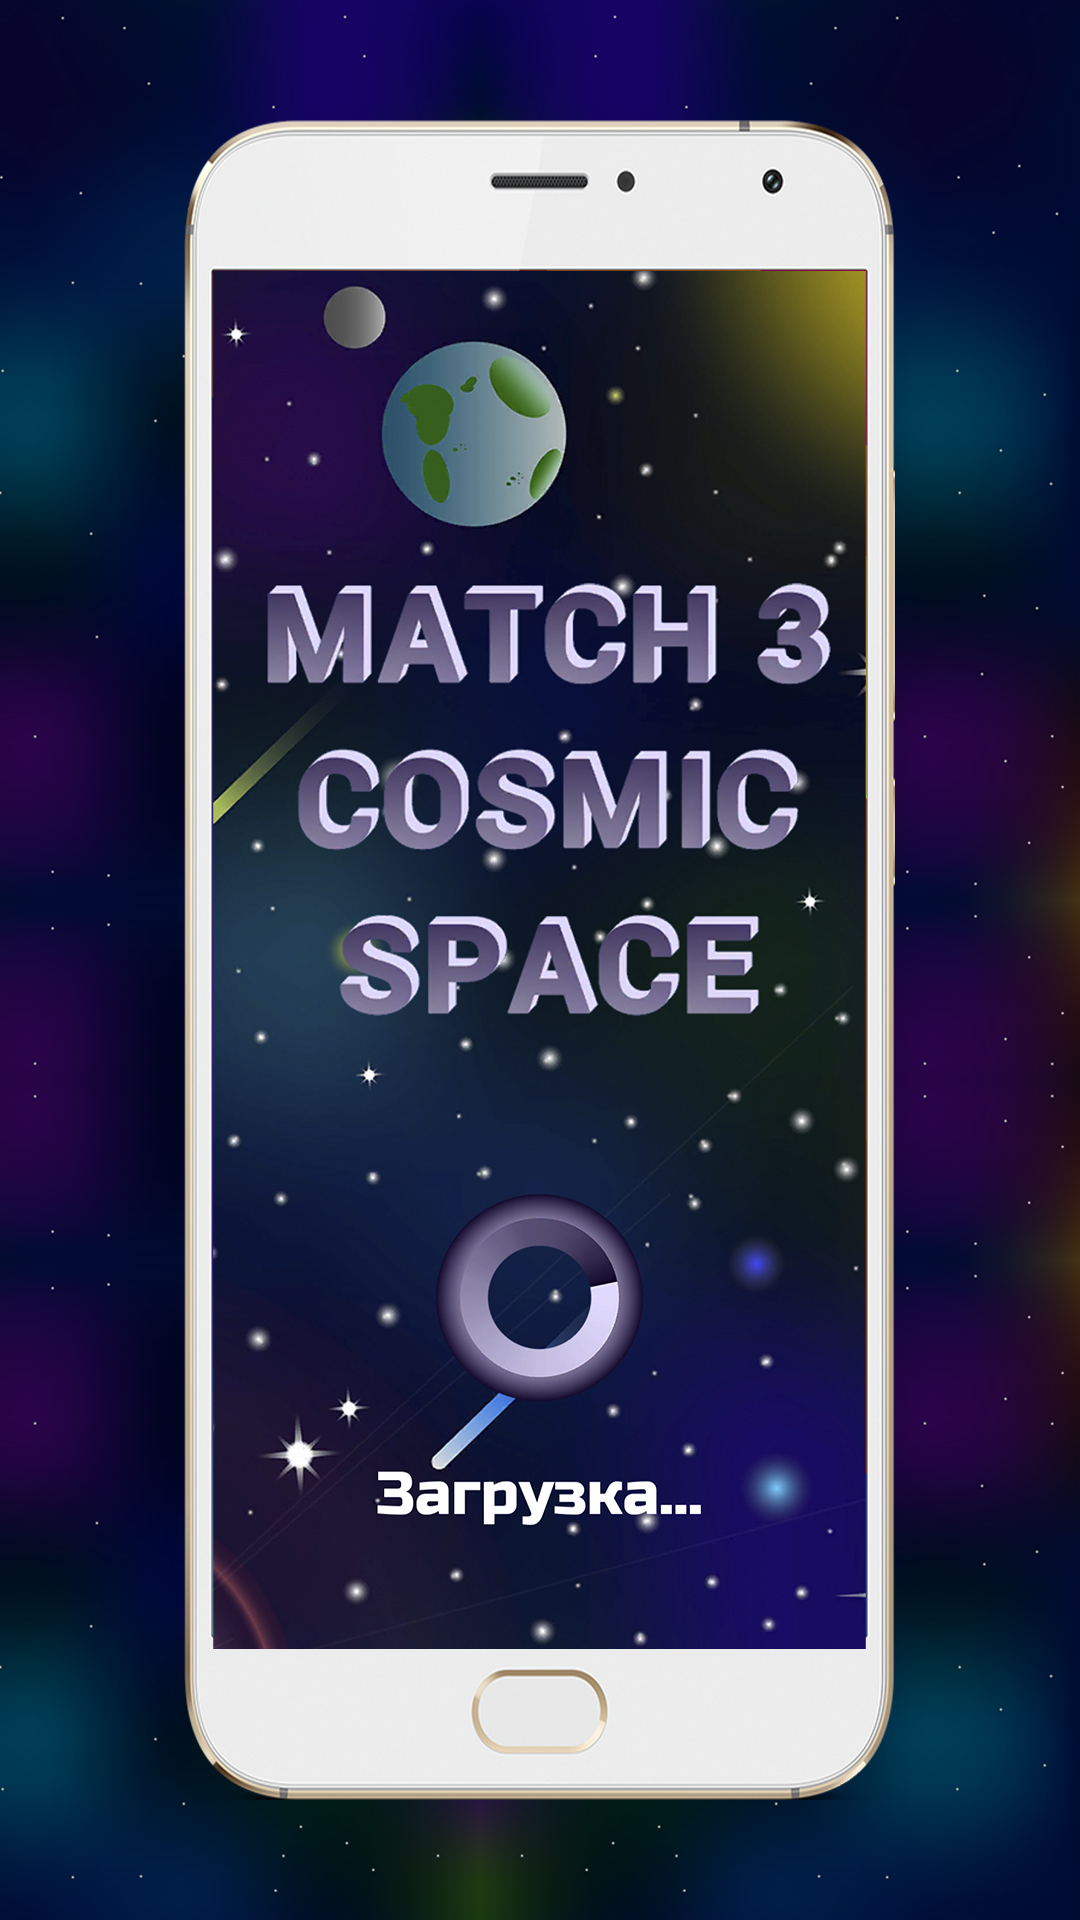 Изображение: Match 3 Cosmic Space